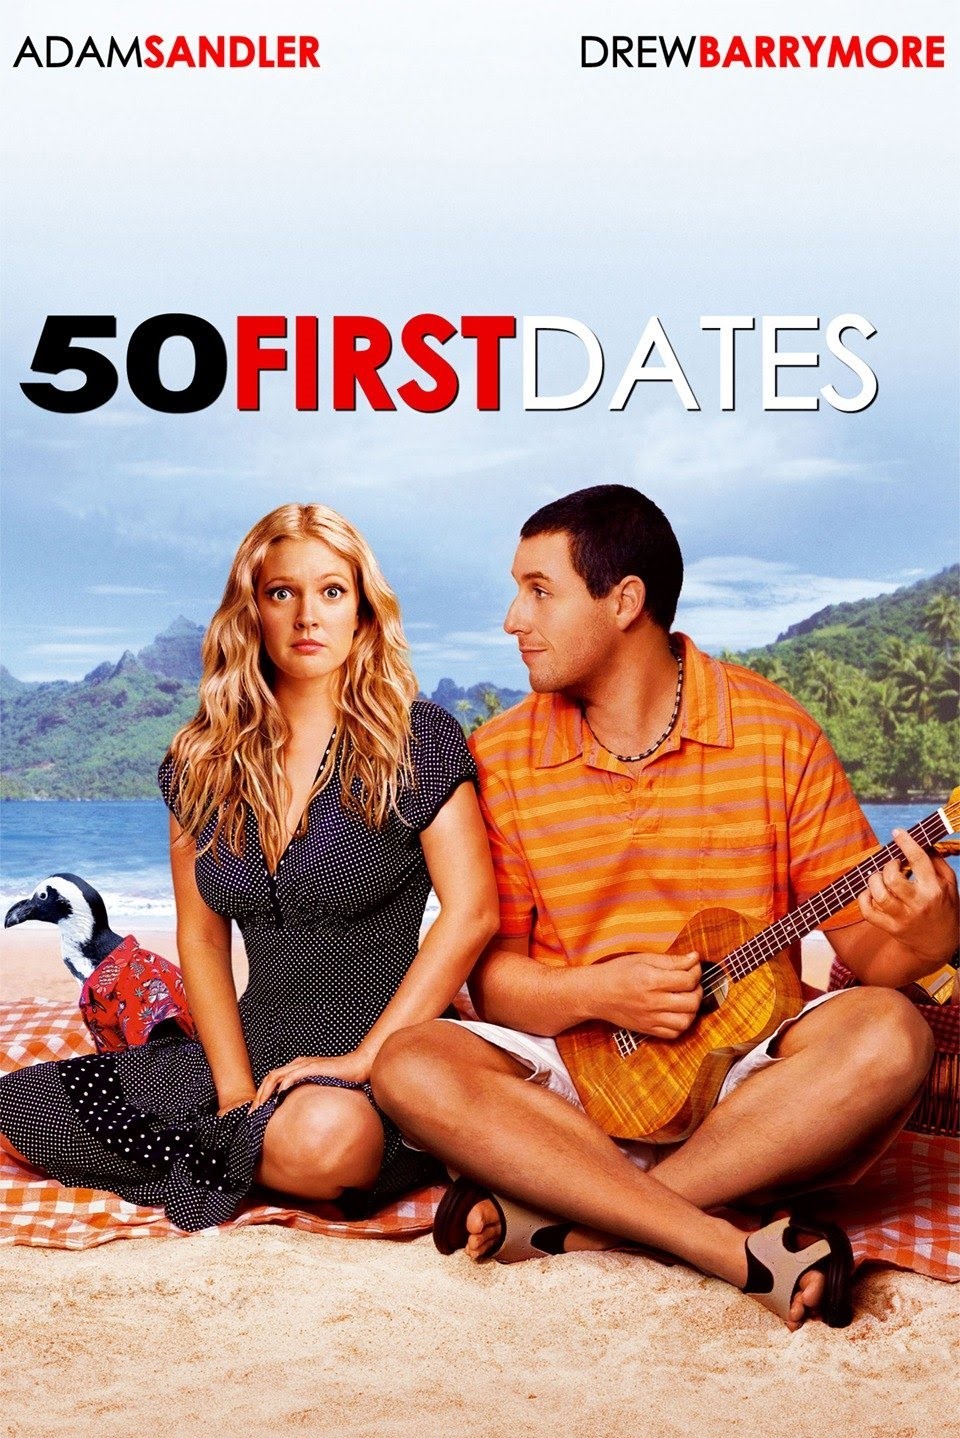 50 first dates movie score